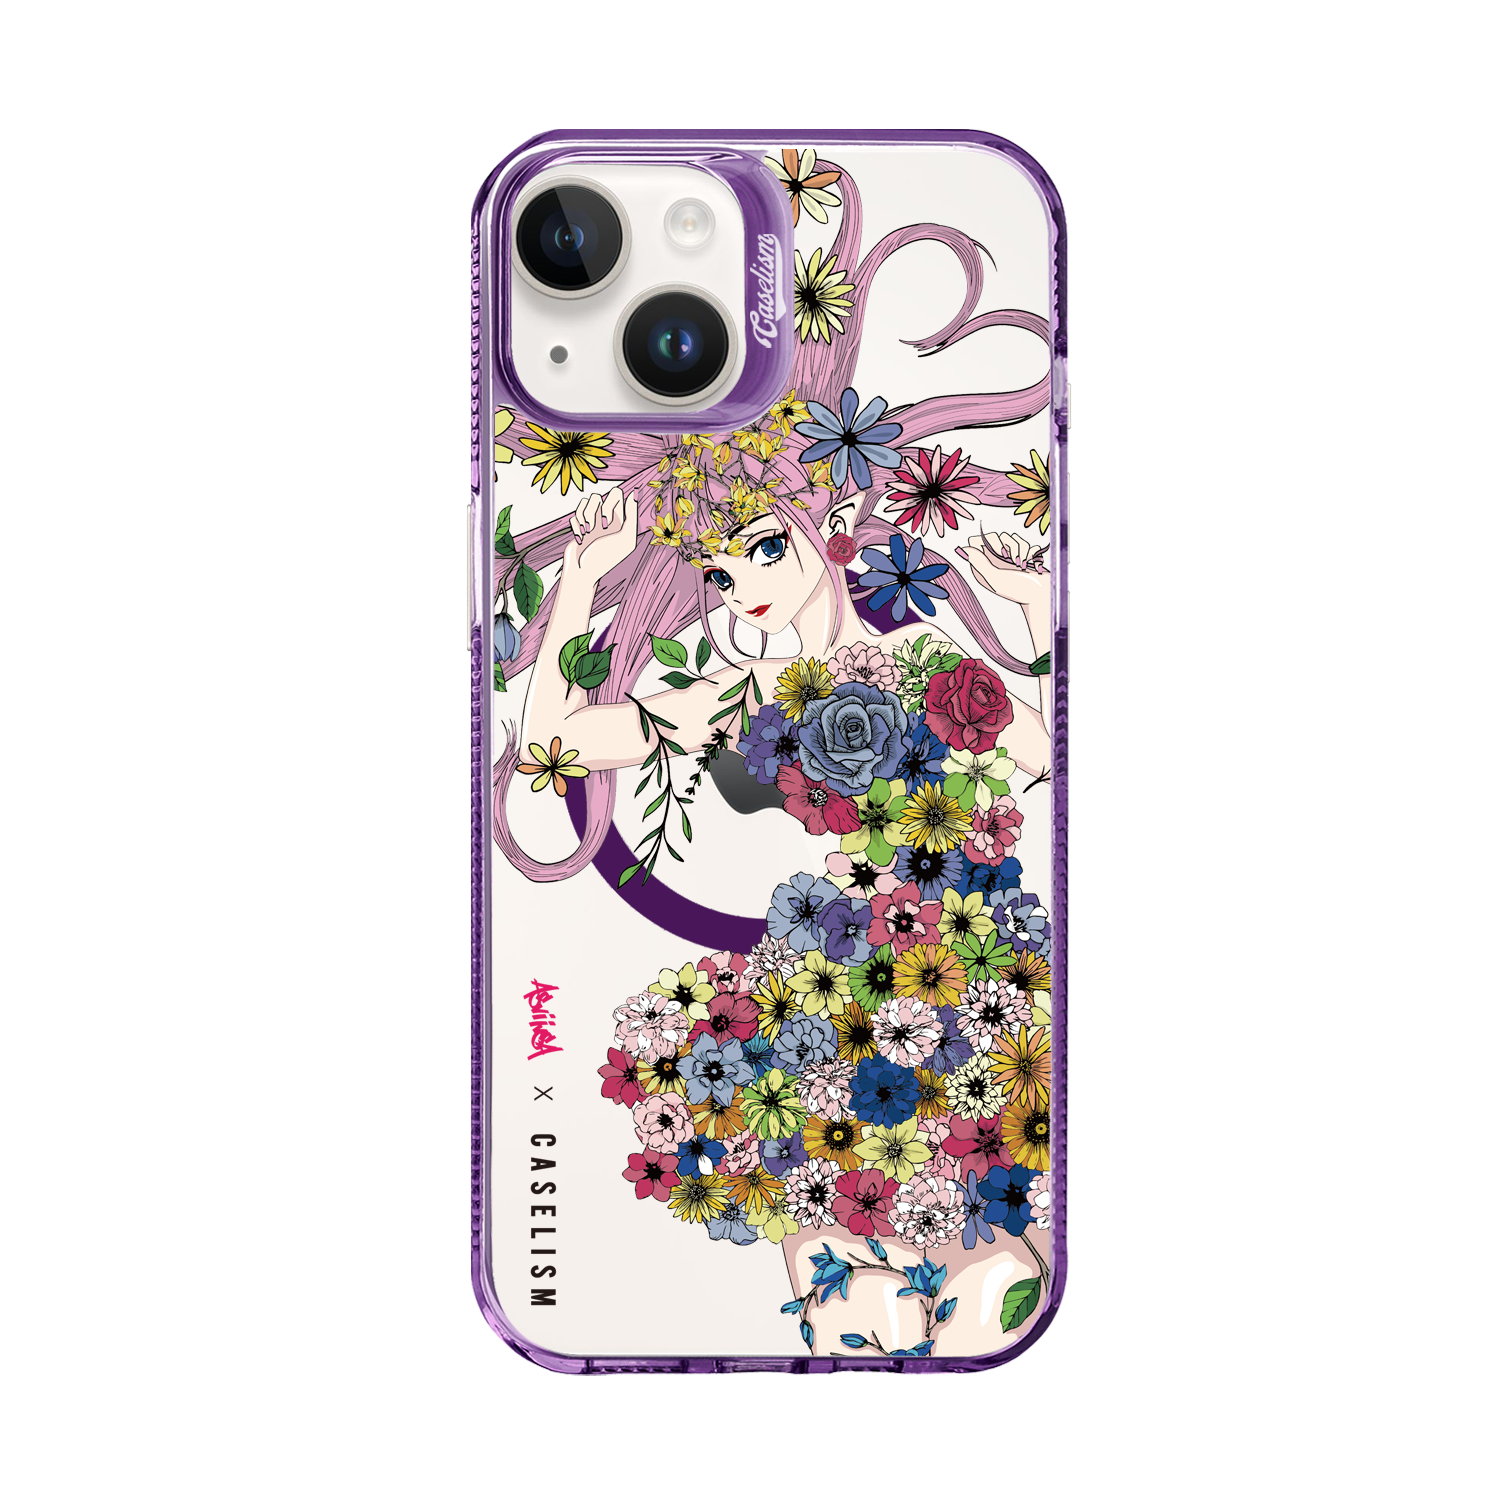 ASVI011 - ColorLite Case for iPhone